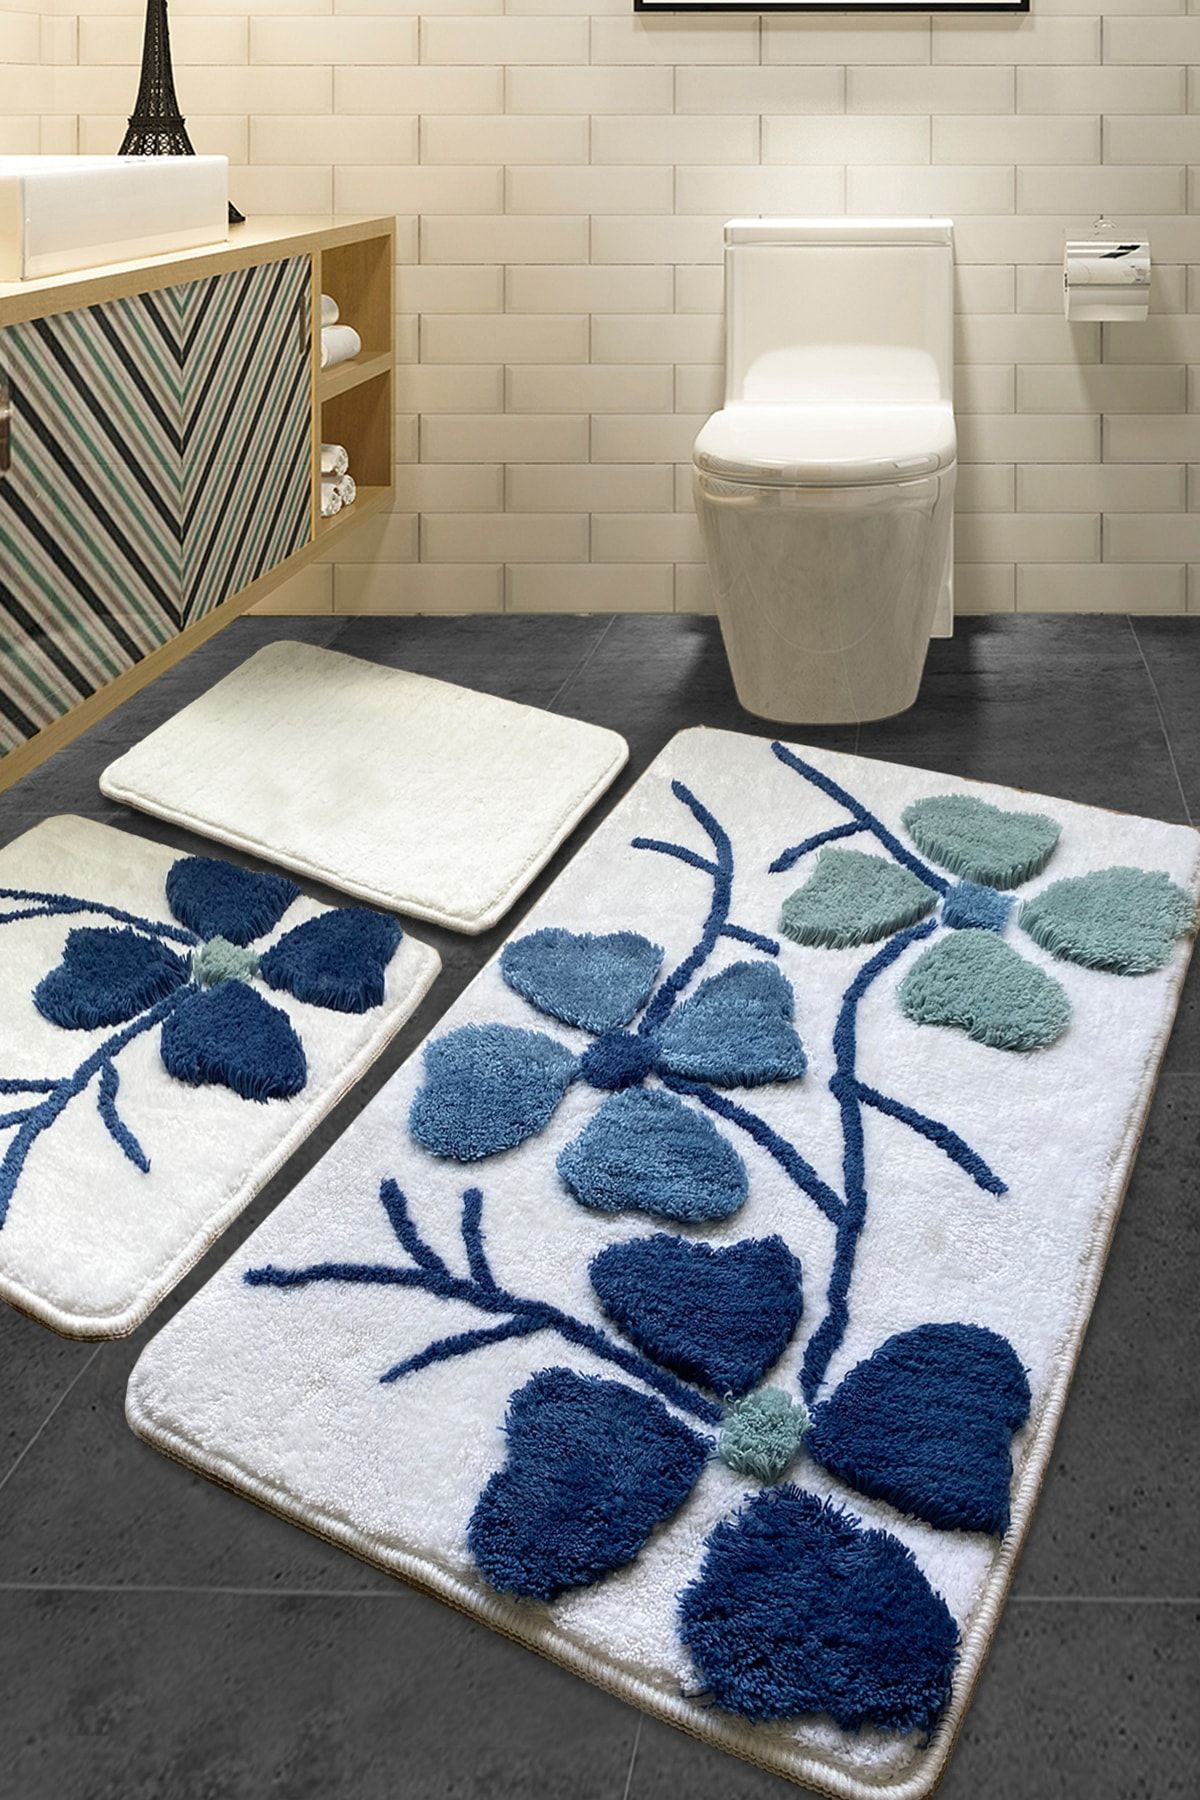 Chilai Home Kırçiçeği Mavi 3lü Set 60x100 Cm 50x60 Cm 40x60 Cm Banyo Halısı Yıkanabilir, Kaymaz